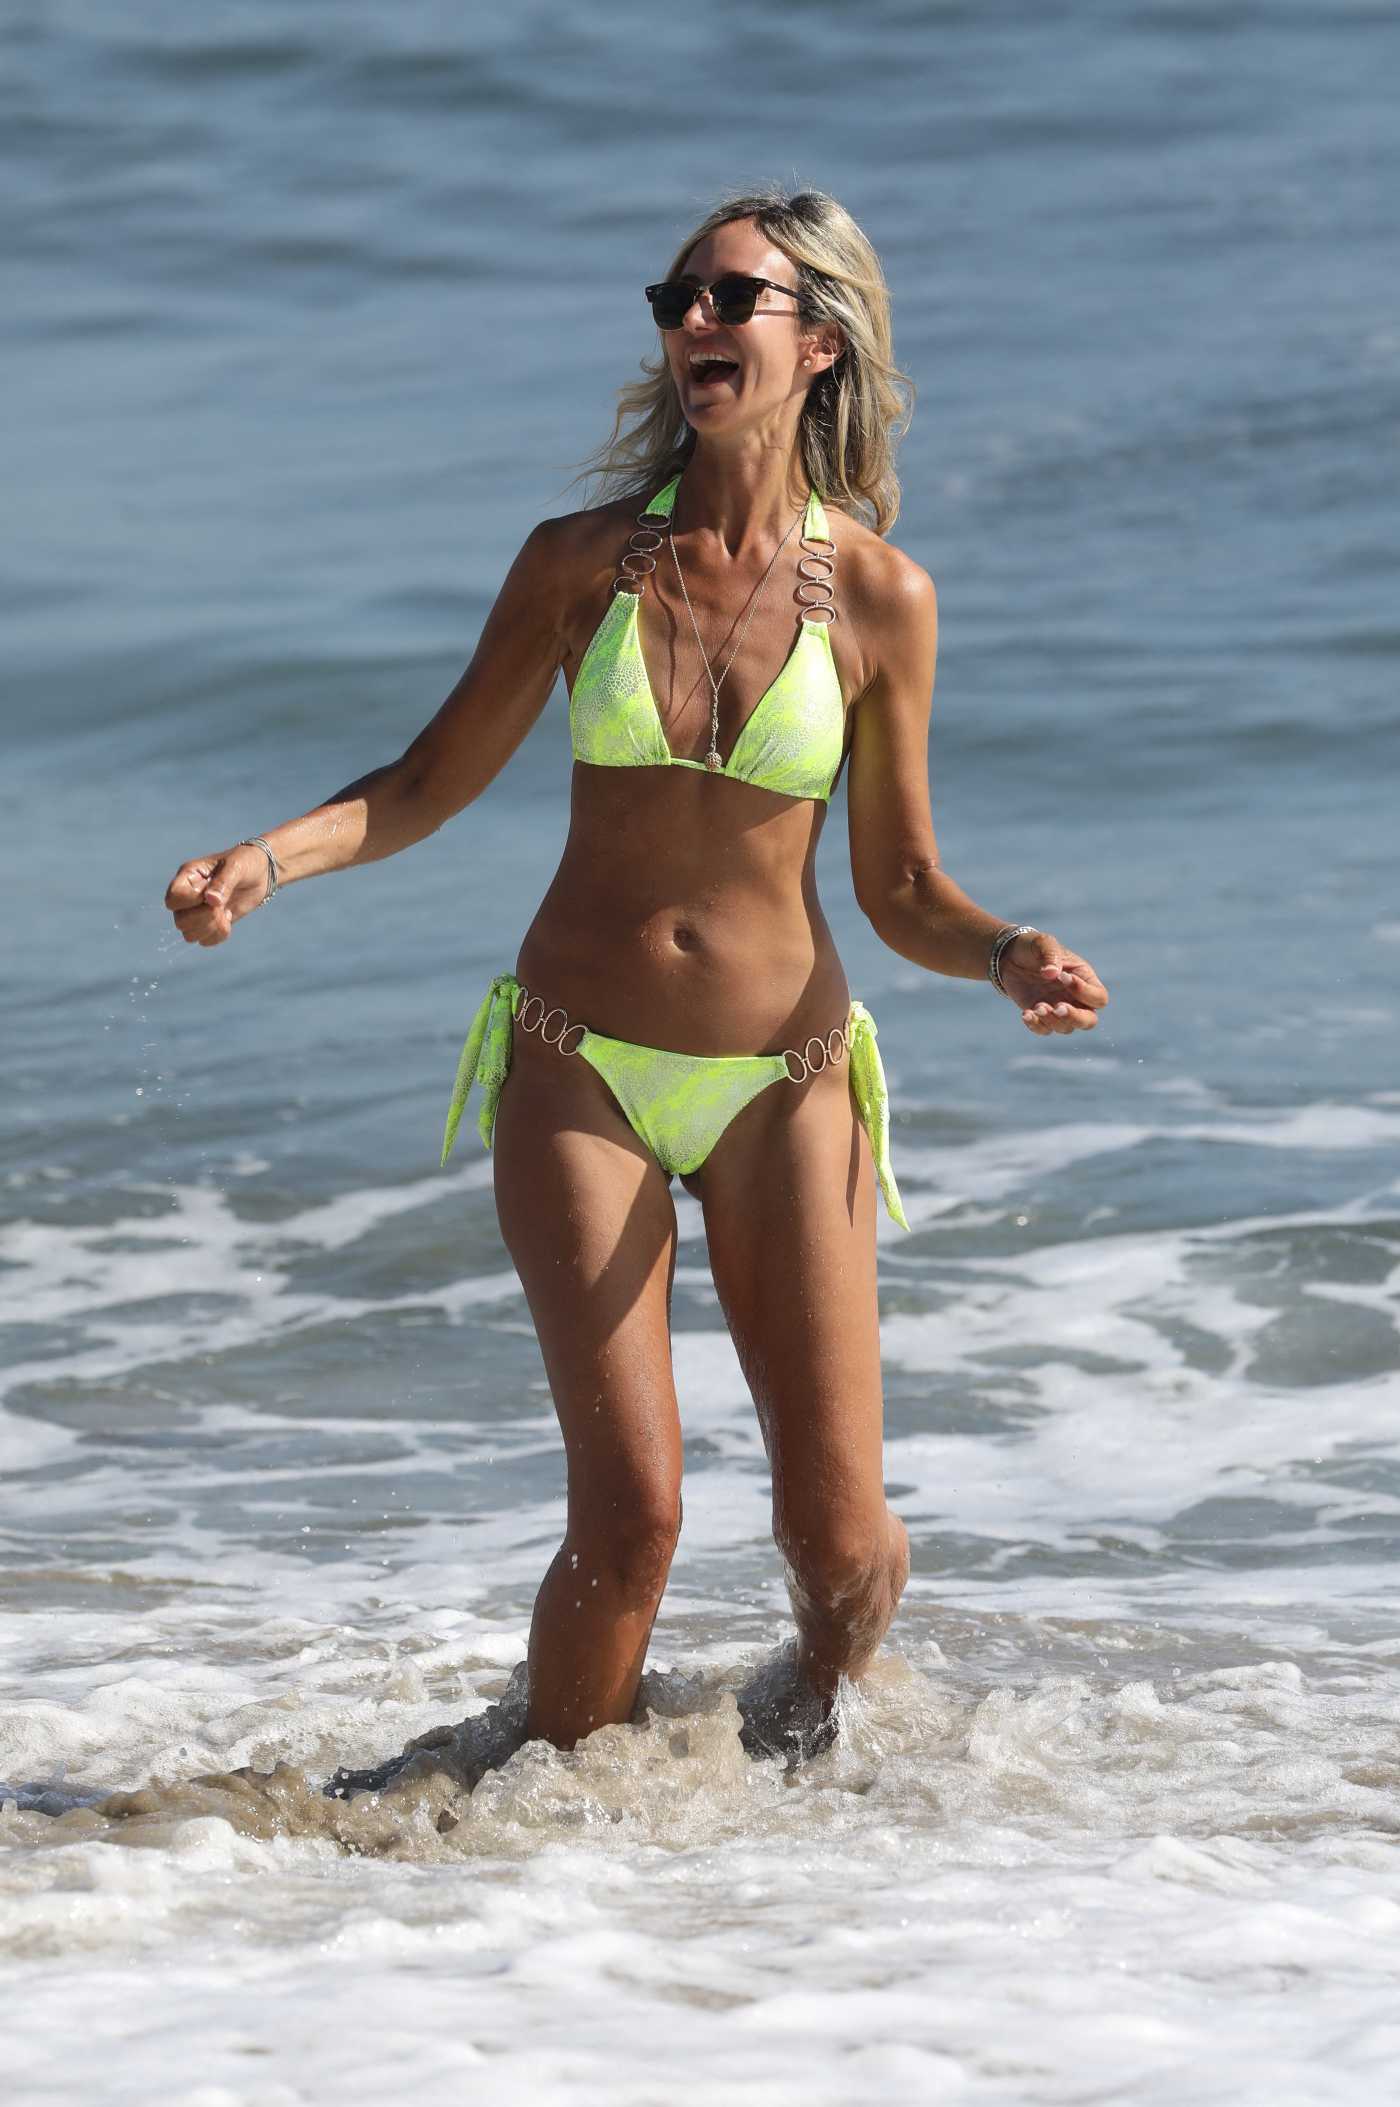 Lady Victoria Hervey in a Neon Green Bikini on the Beach in Malibu 09/01/2022